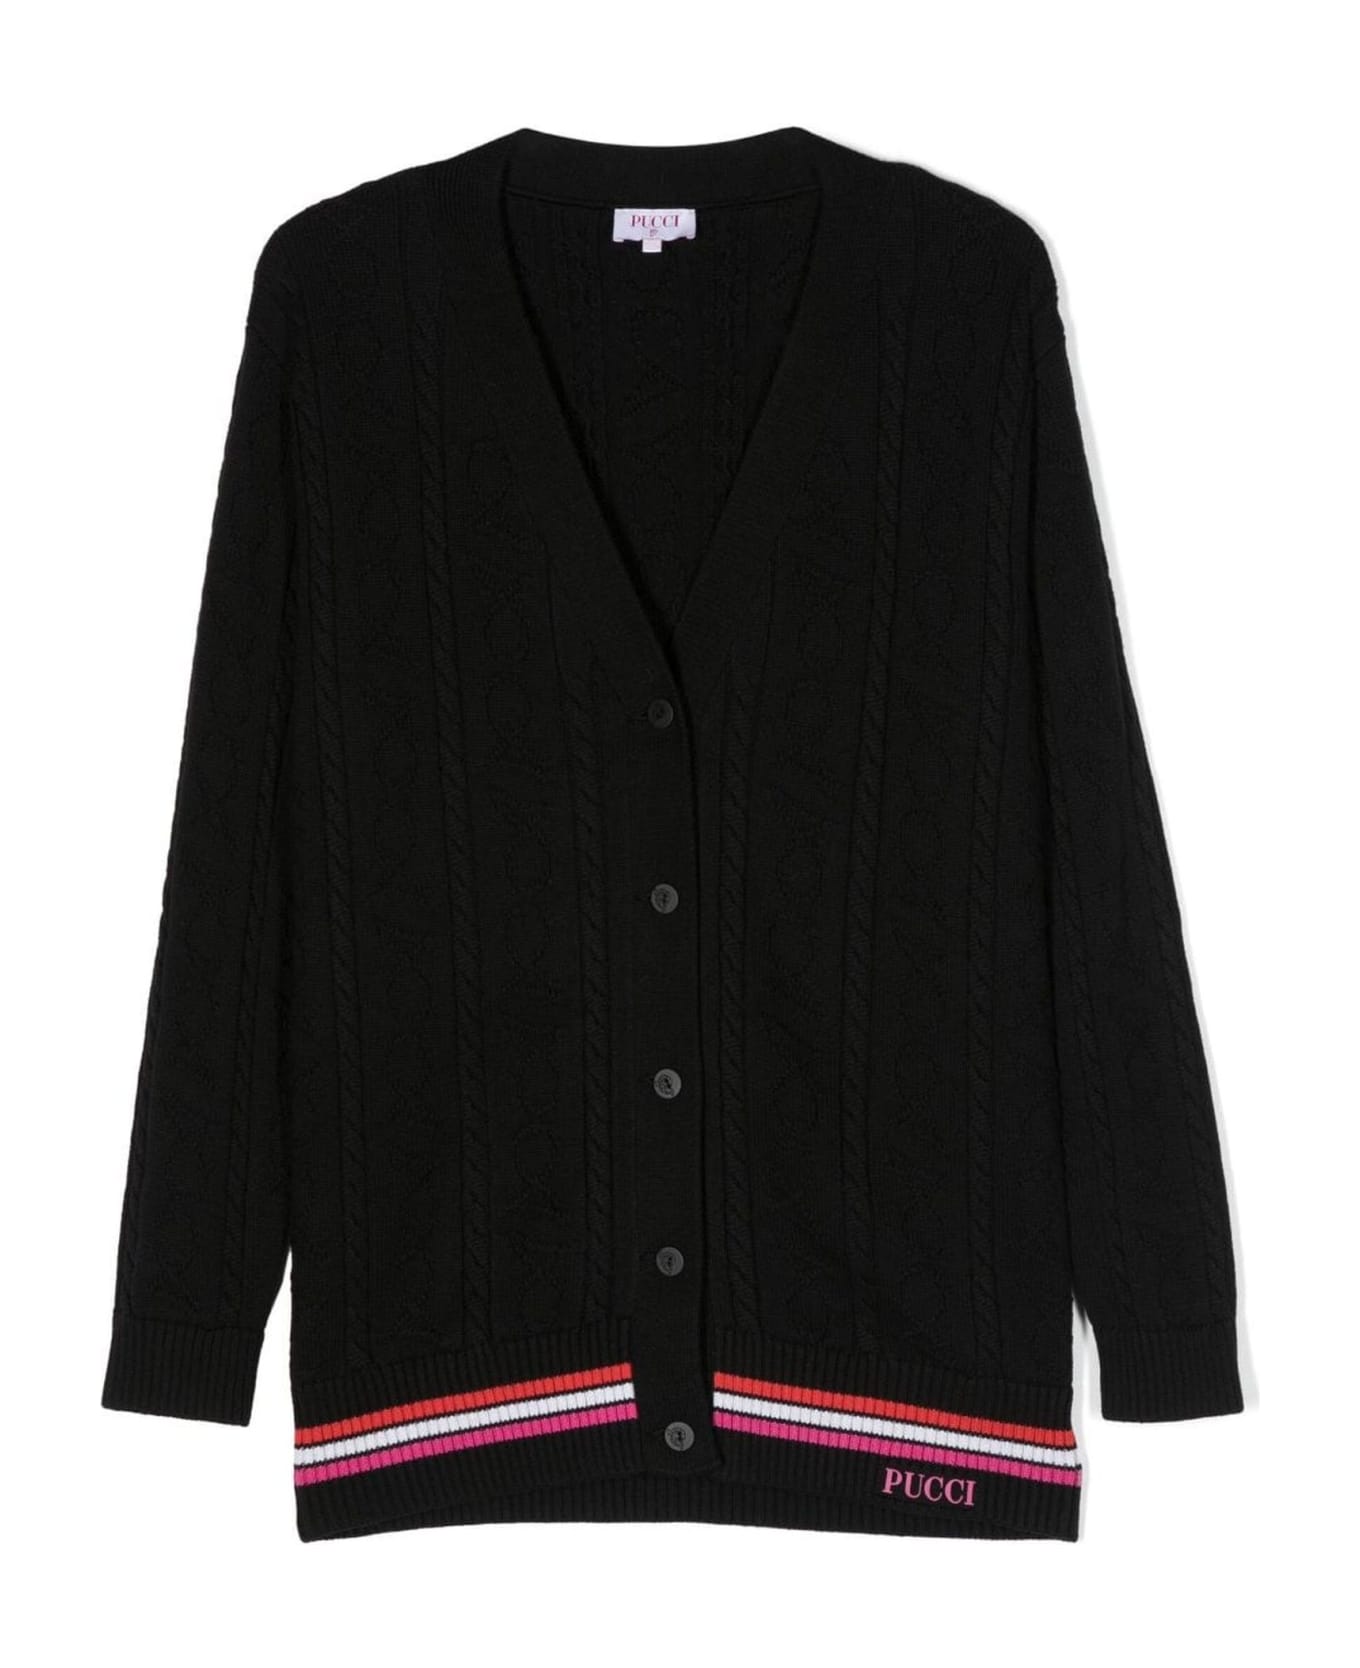 Pucci Emilio Pucci Sweaters Black - Black